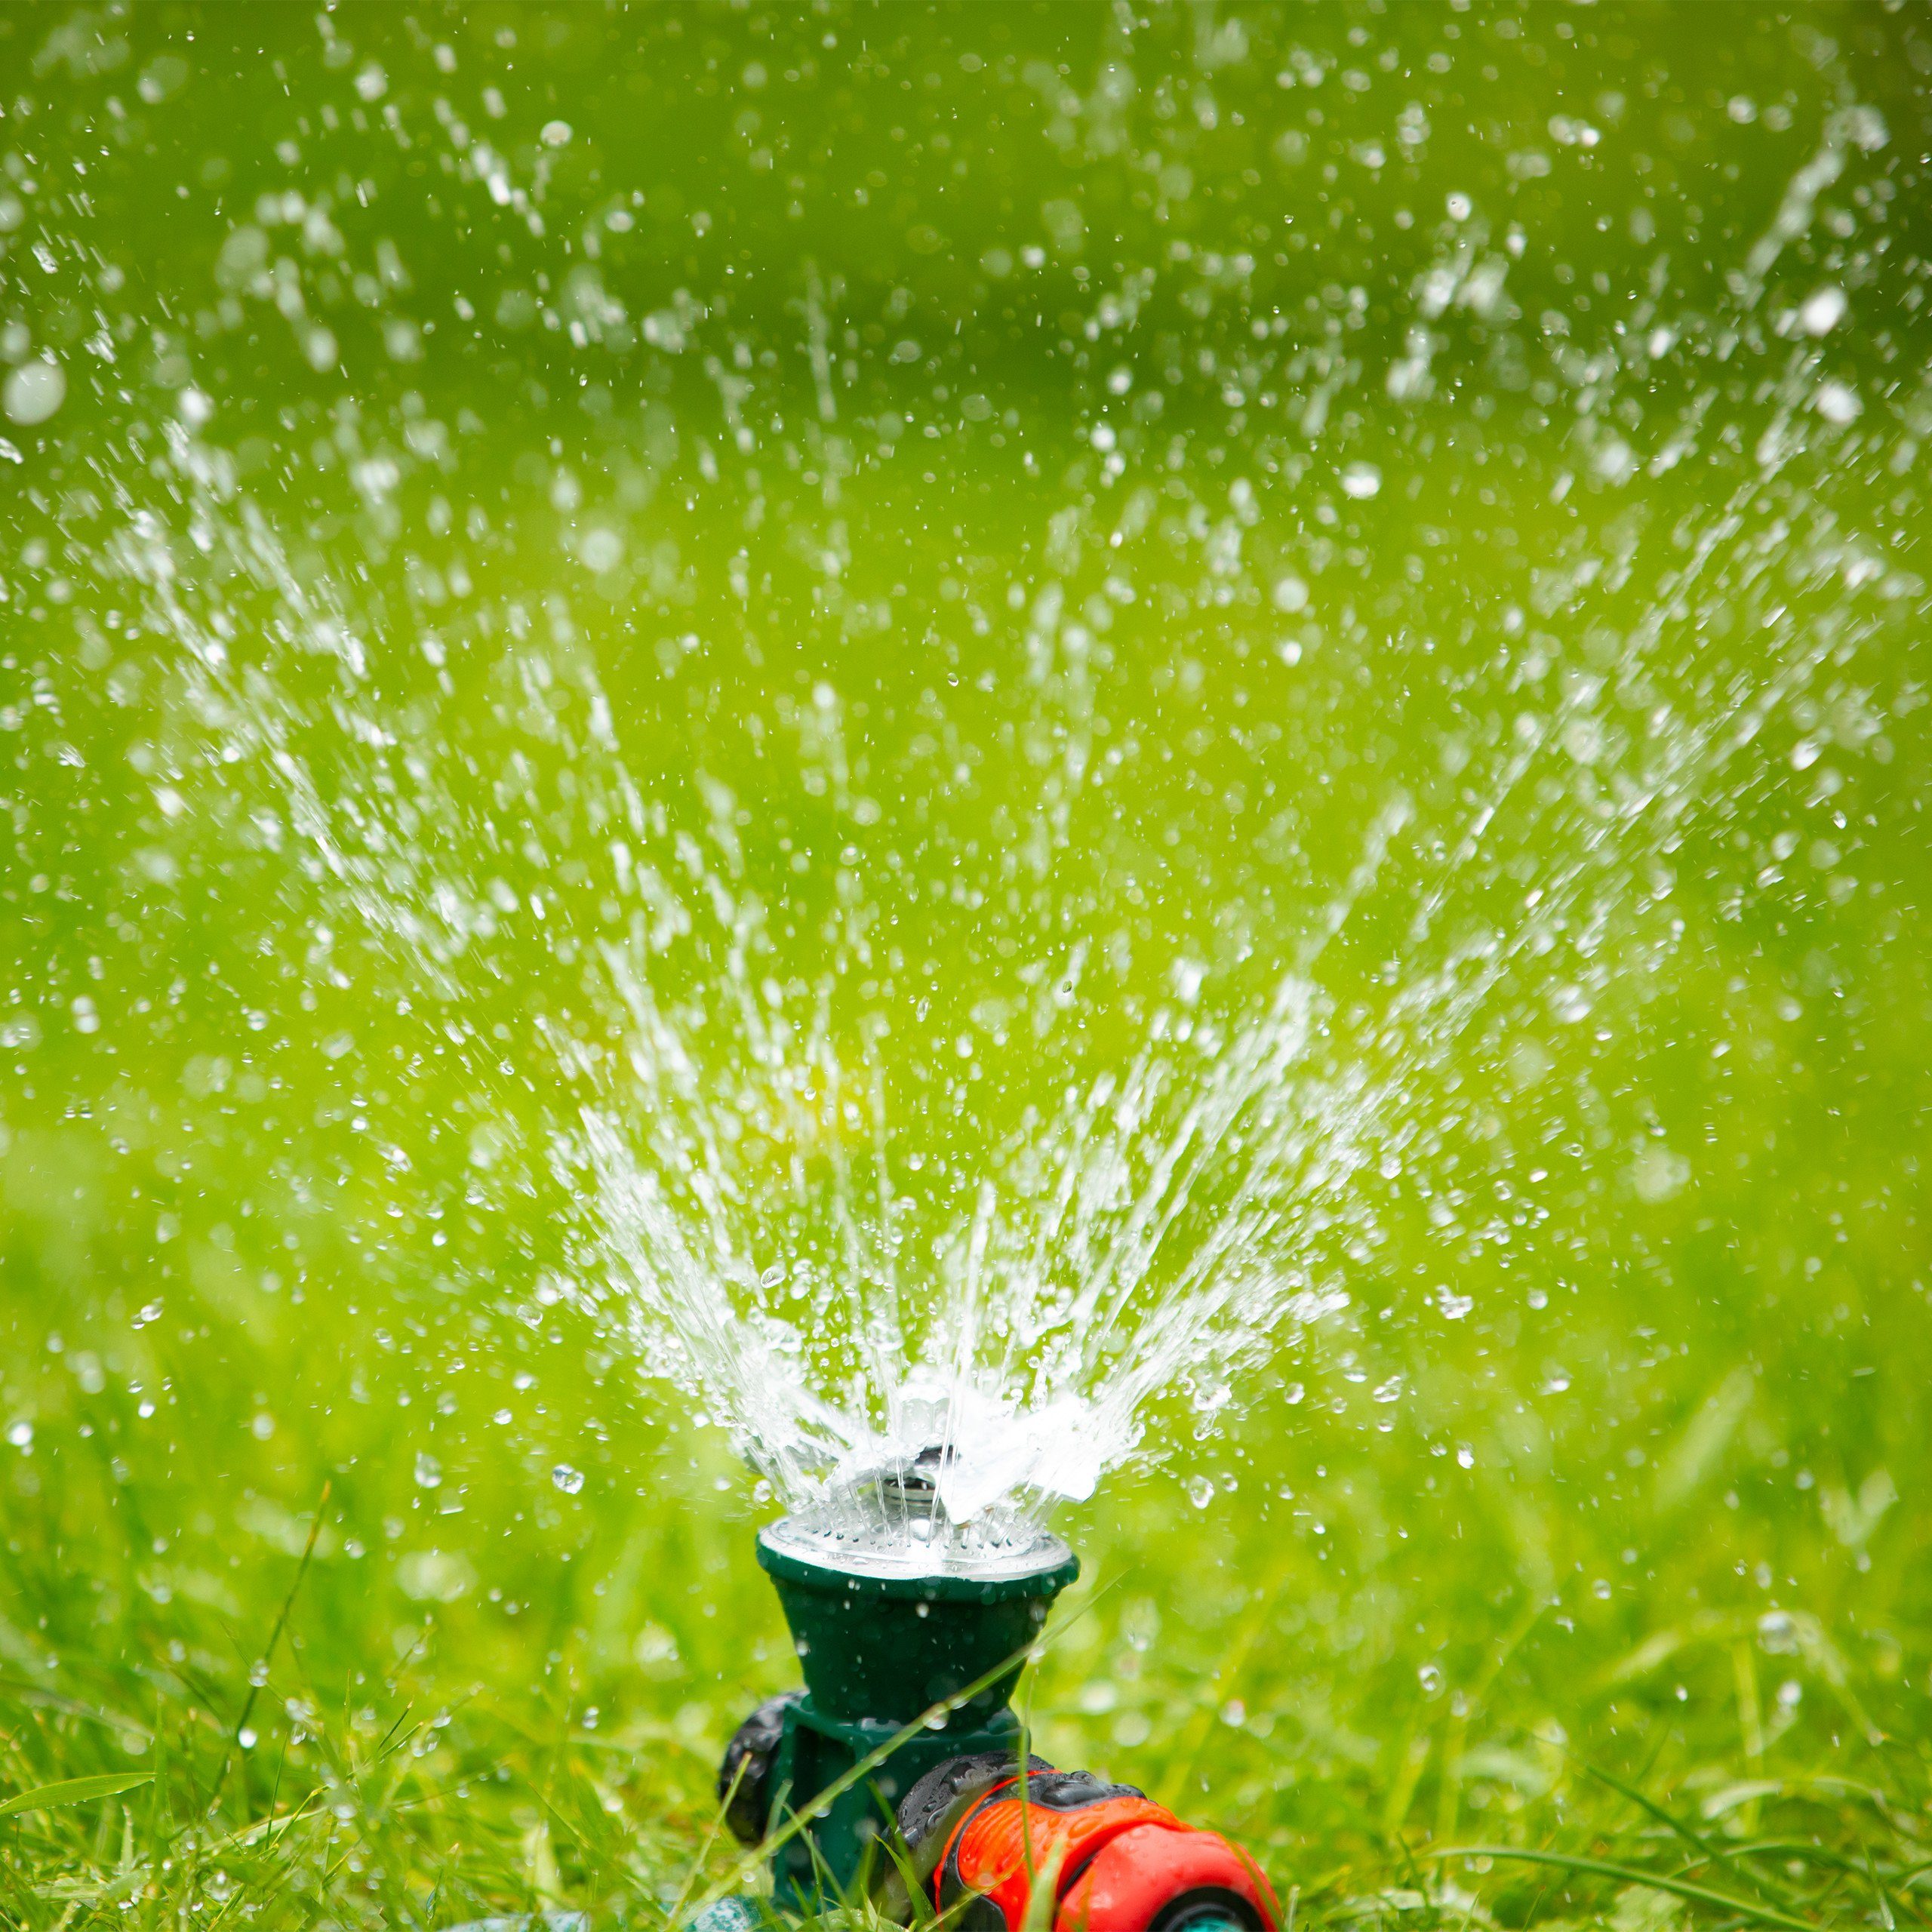 relaxdays Regner »Rasensprenger Garten«, Rasensprenger: Sprinkler zur  Bewässerung runder Flächen - Je nach Wasserdruck 5 - 6 Meter Sprühweite  online kaufen | OTTO